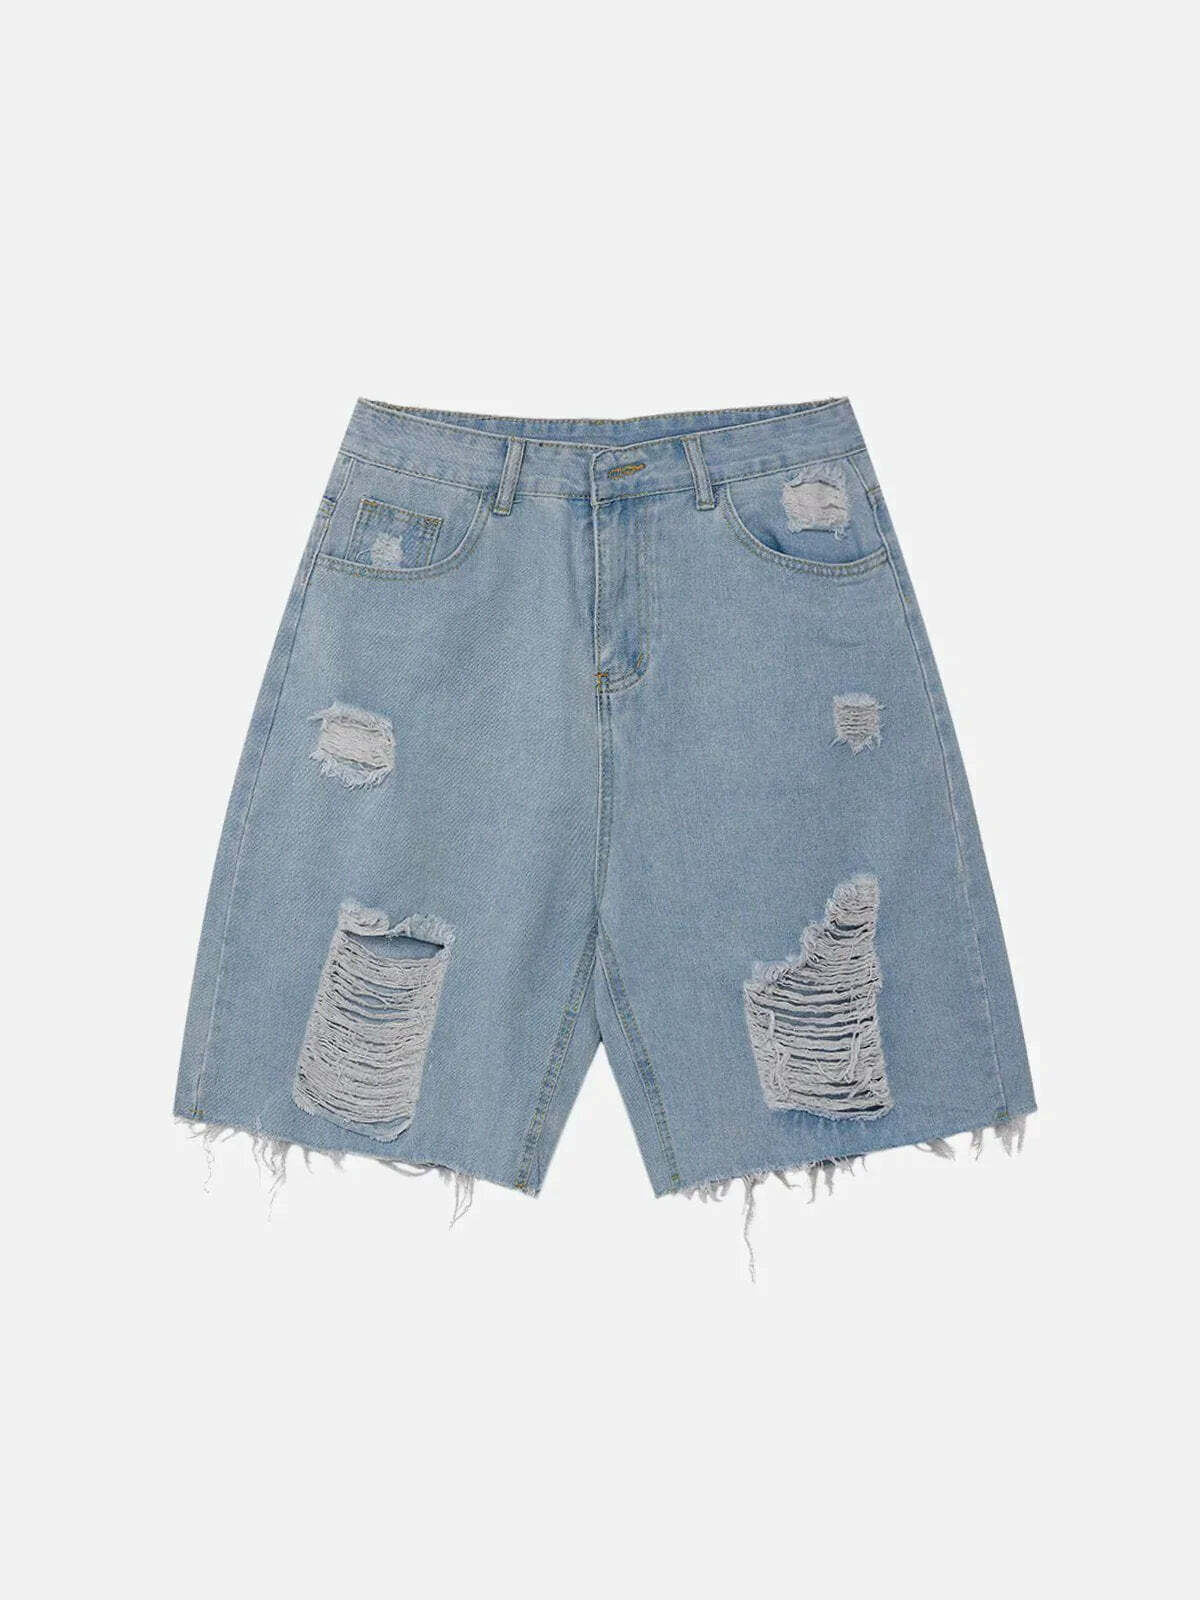 shredded denim shorts edgy urban y2k essential 6814